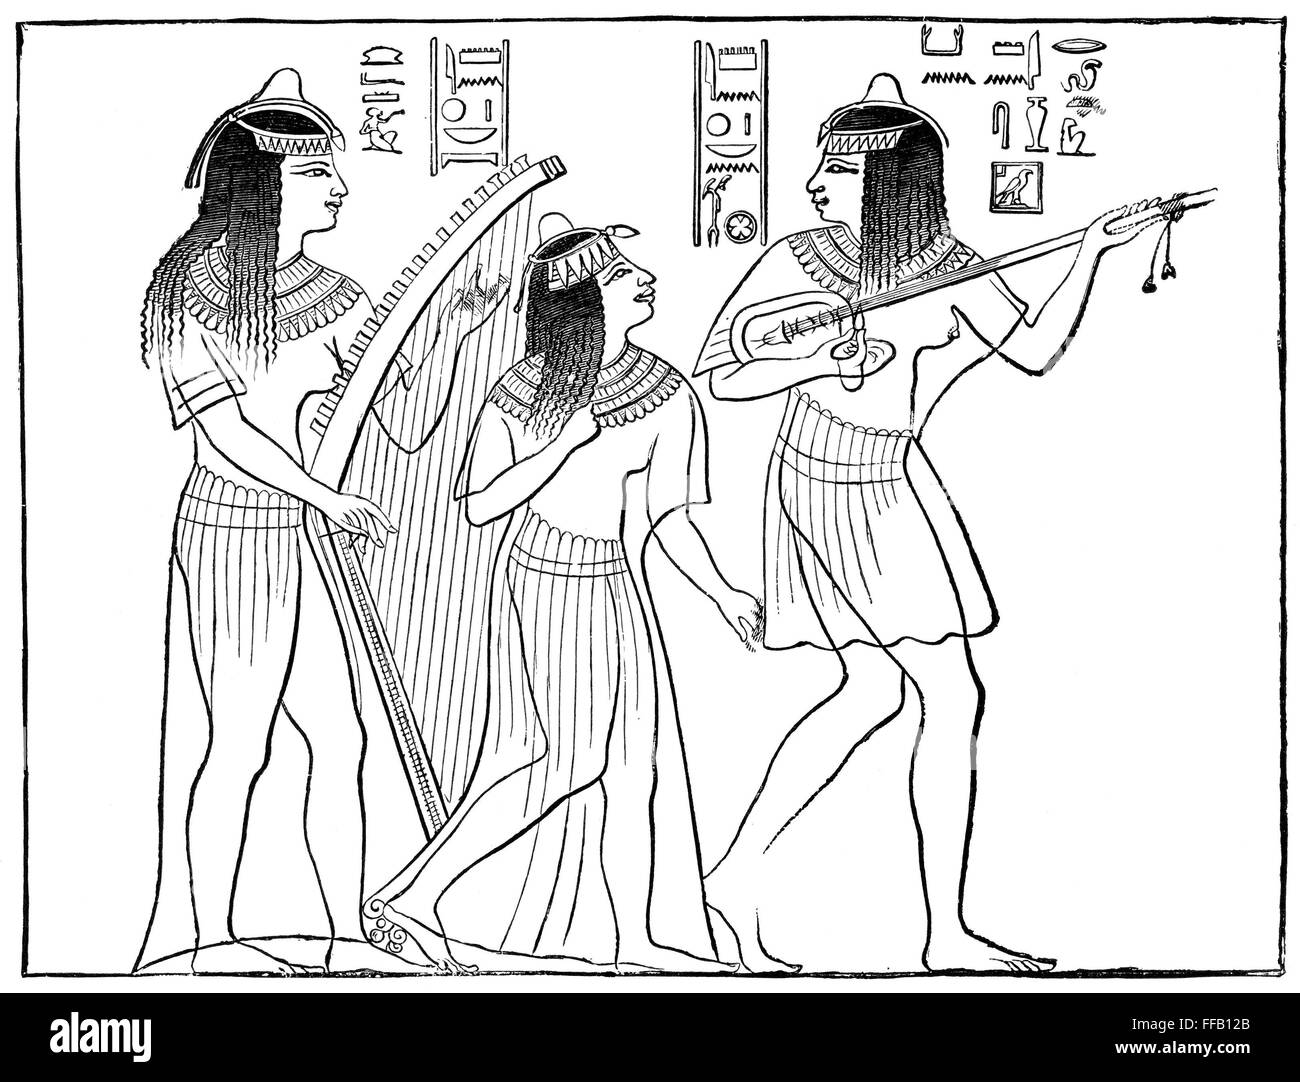 L'Egypte ancienne : la musique. NMusicians /de l'Egypte ancienne : Dessin de ligne, 19e siècle, après une ancienne fresque égyptienne. Banque D'Images